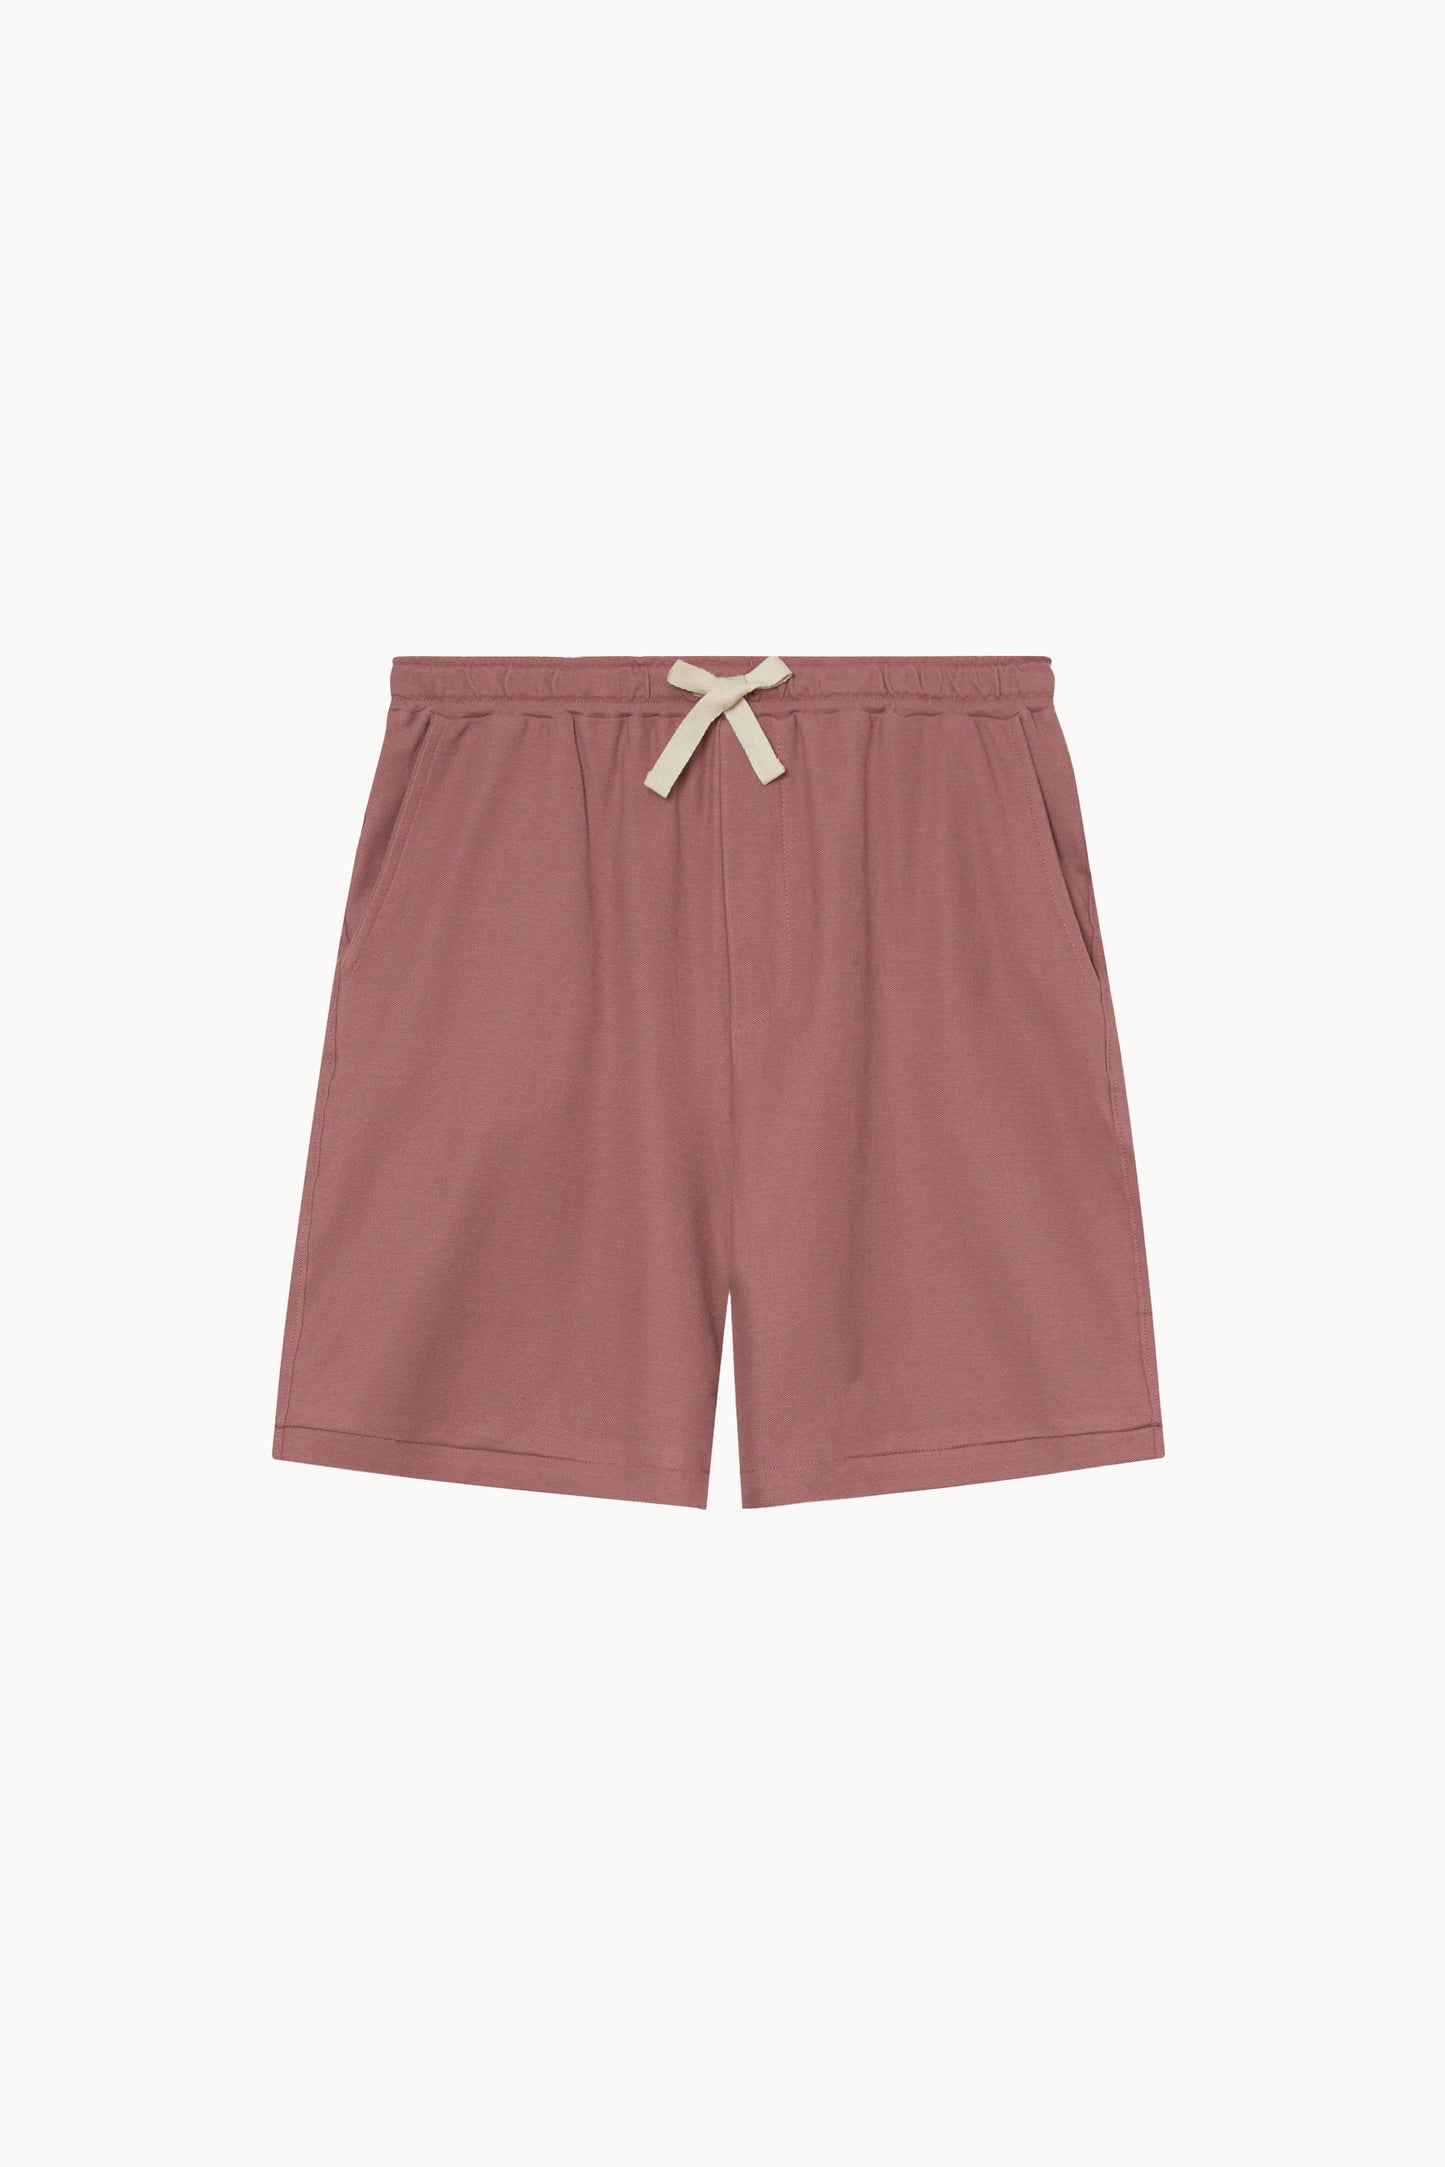 pique shorts burgundy